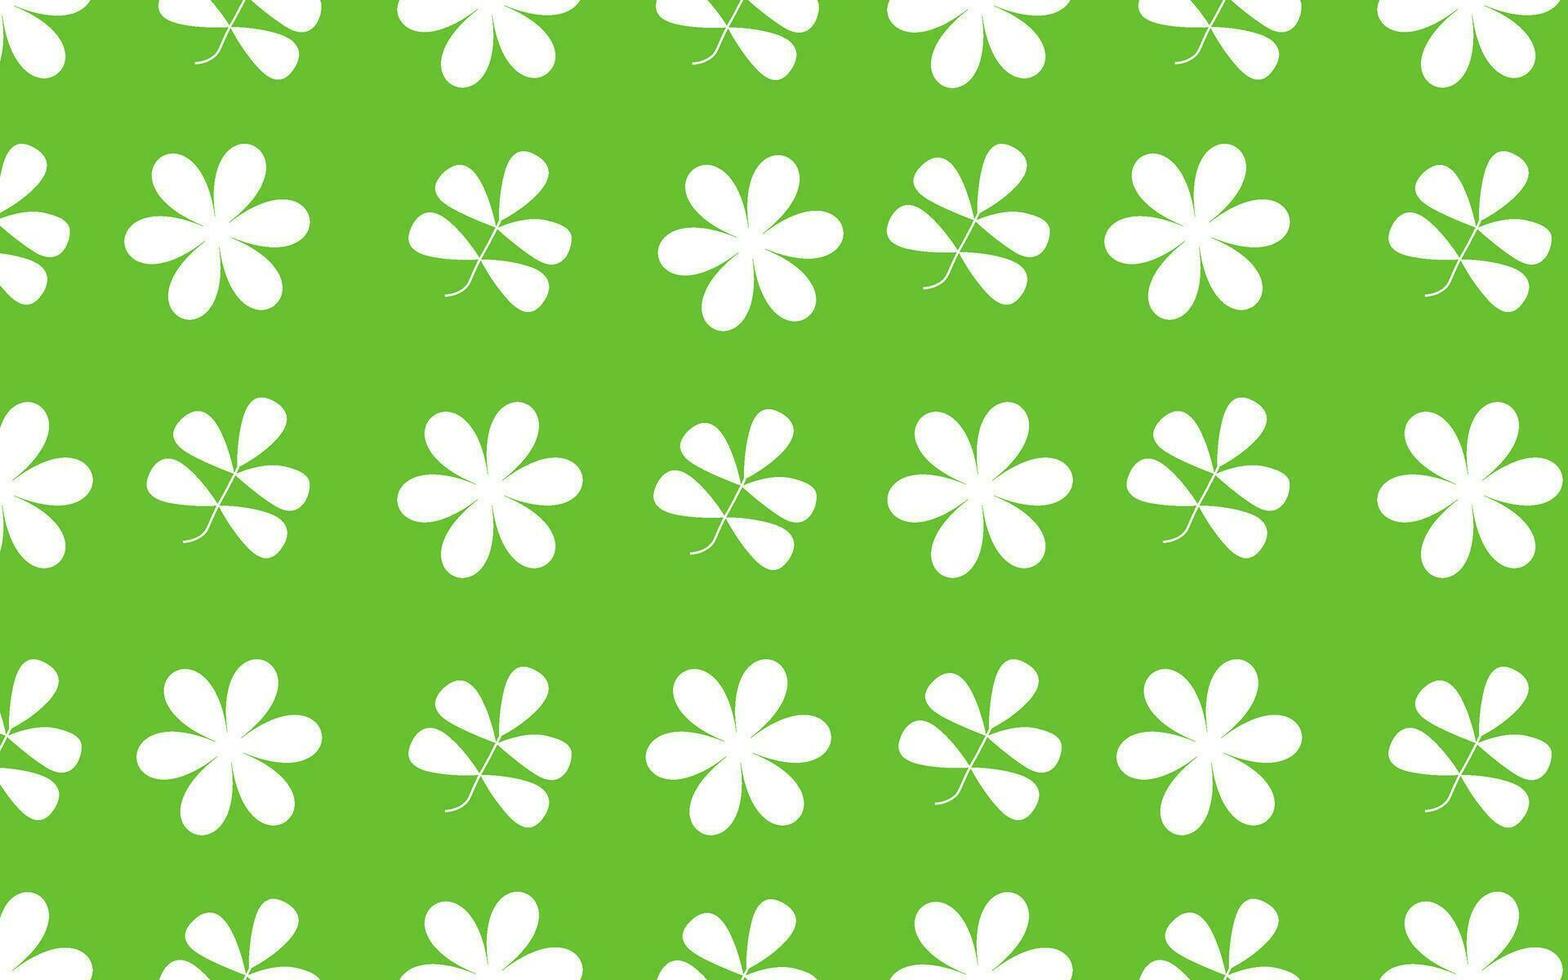 Frühling Vektor nahtlos Muster mit Weiß Blumen auf ein Grün Hintergrund. Hintergrund zum Karte, Einladung, Stoff, Glückwunsch und Banner.